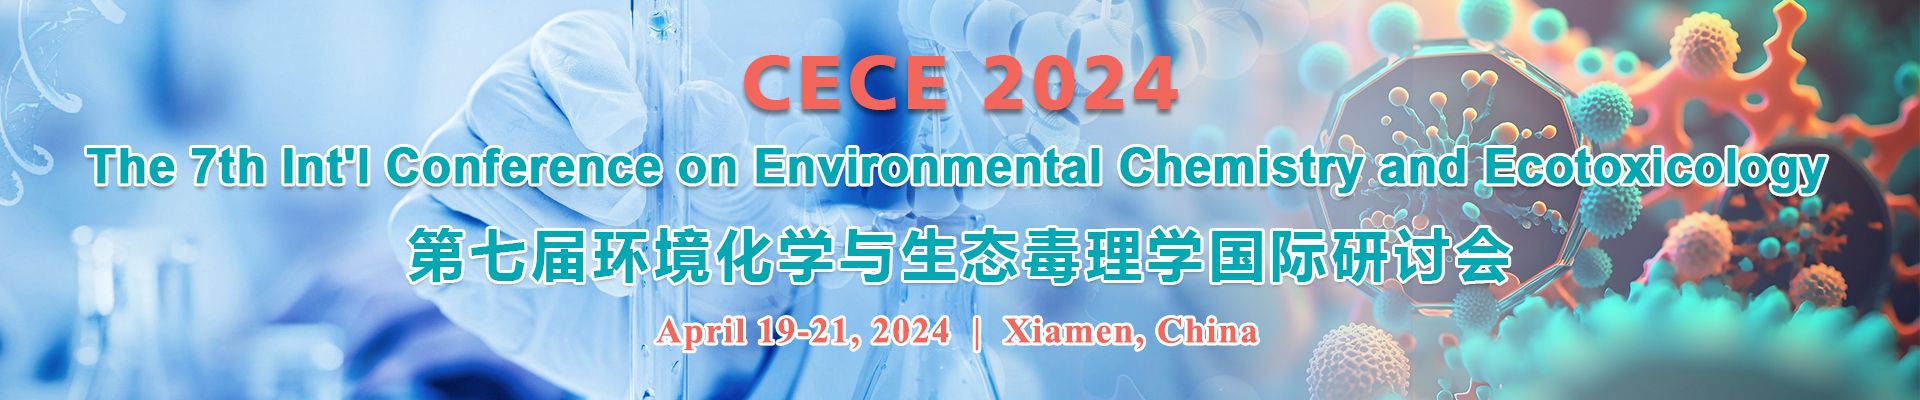 第七届环境化学与生态毒理学国际研讨会(CECE 2024)